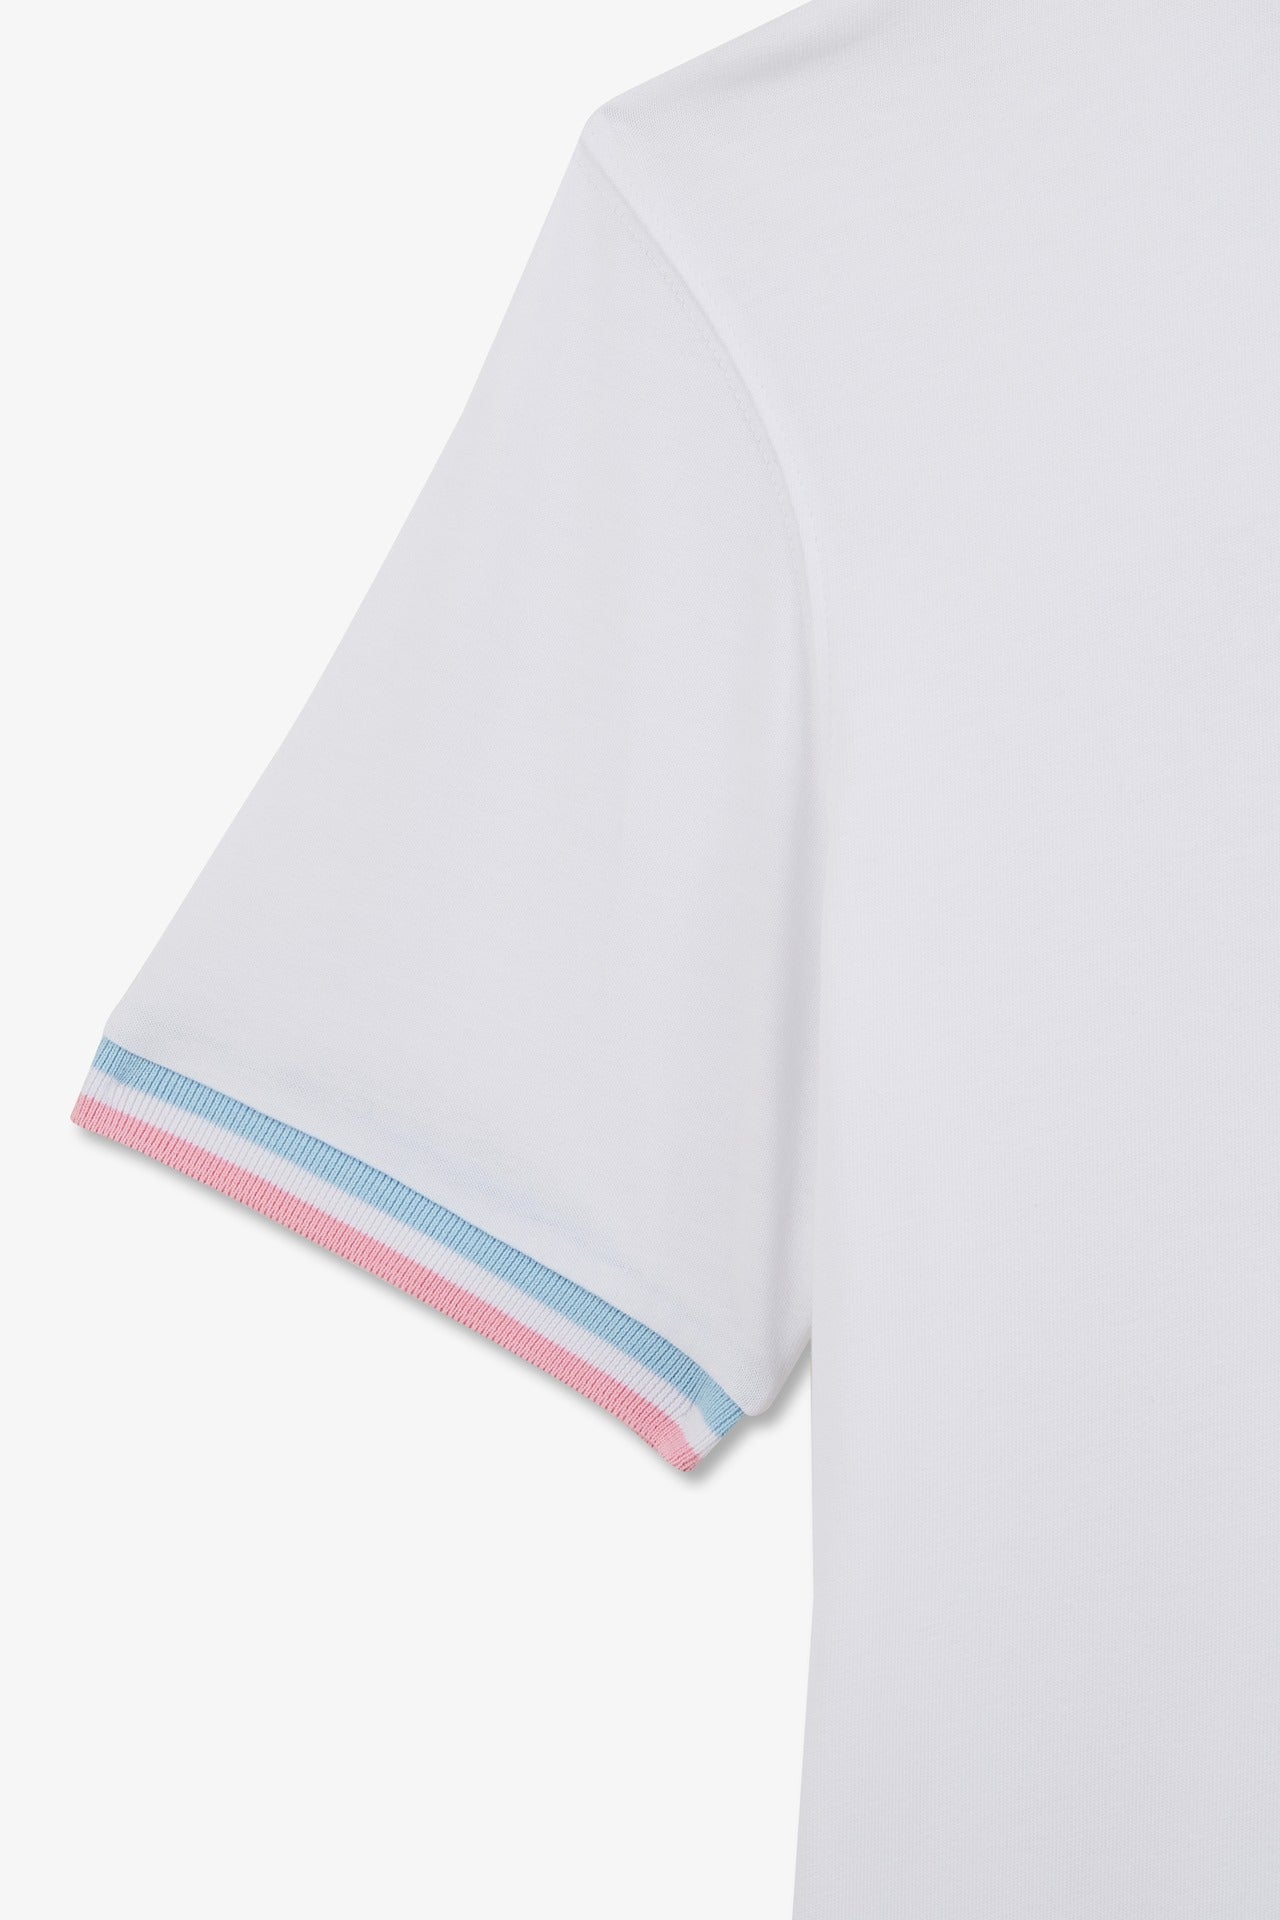 T-shirt manches courtes blanc avec logo reliefé - Image 9